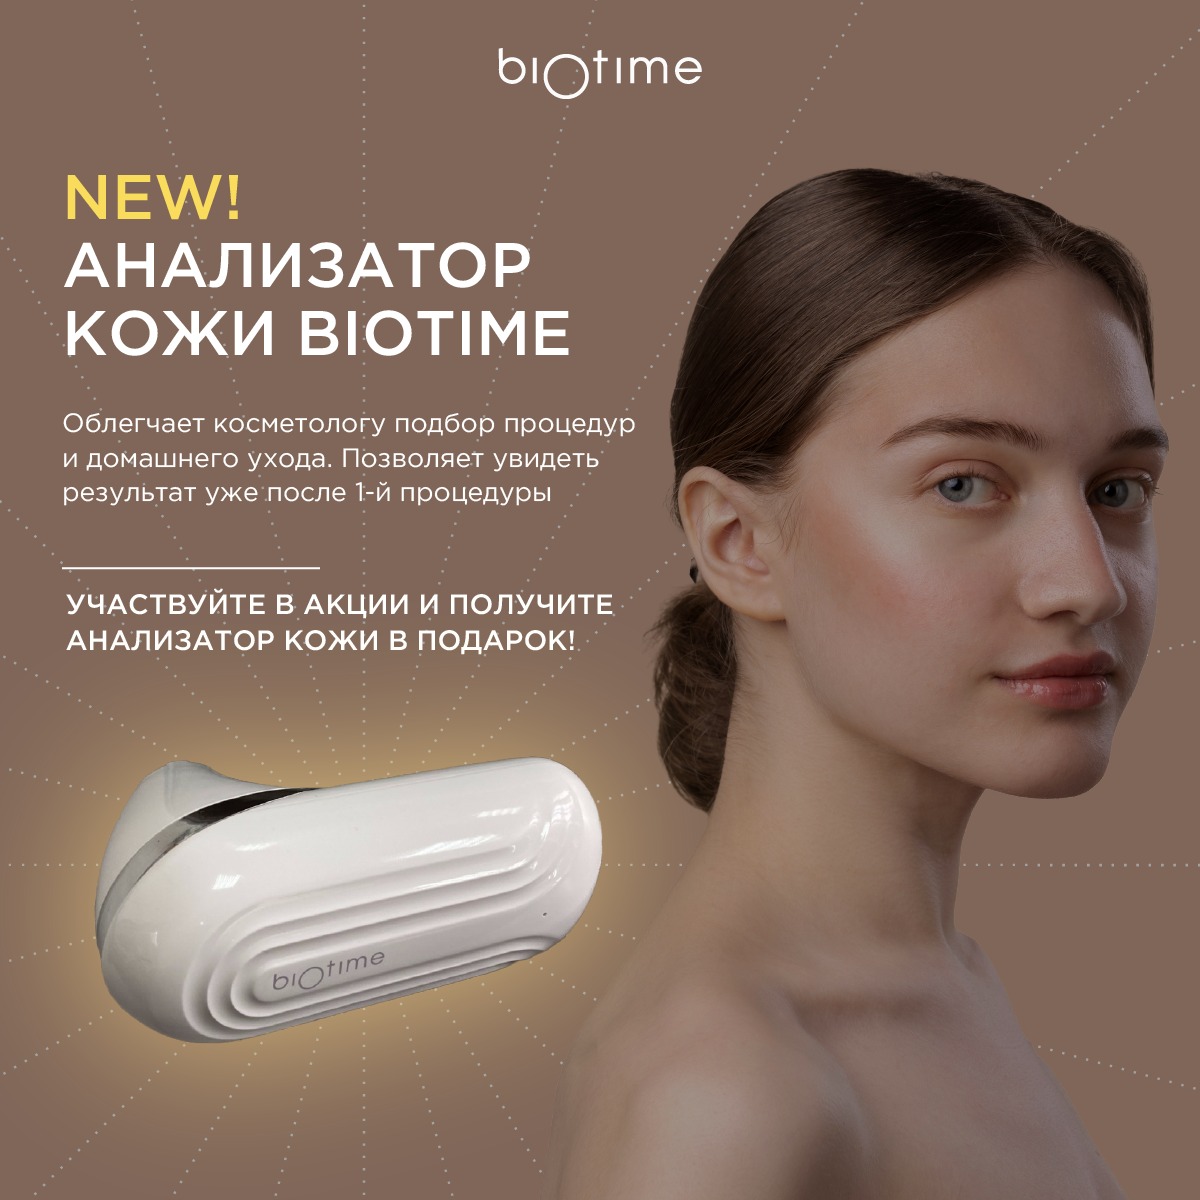 Анализатор кожи – инновация от Biotime